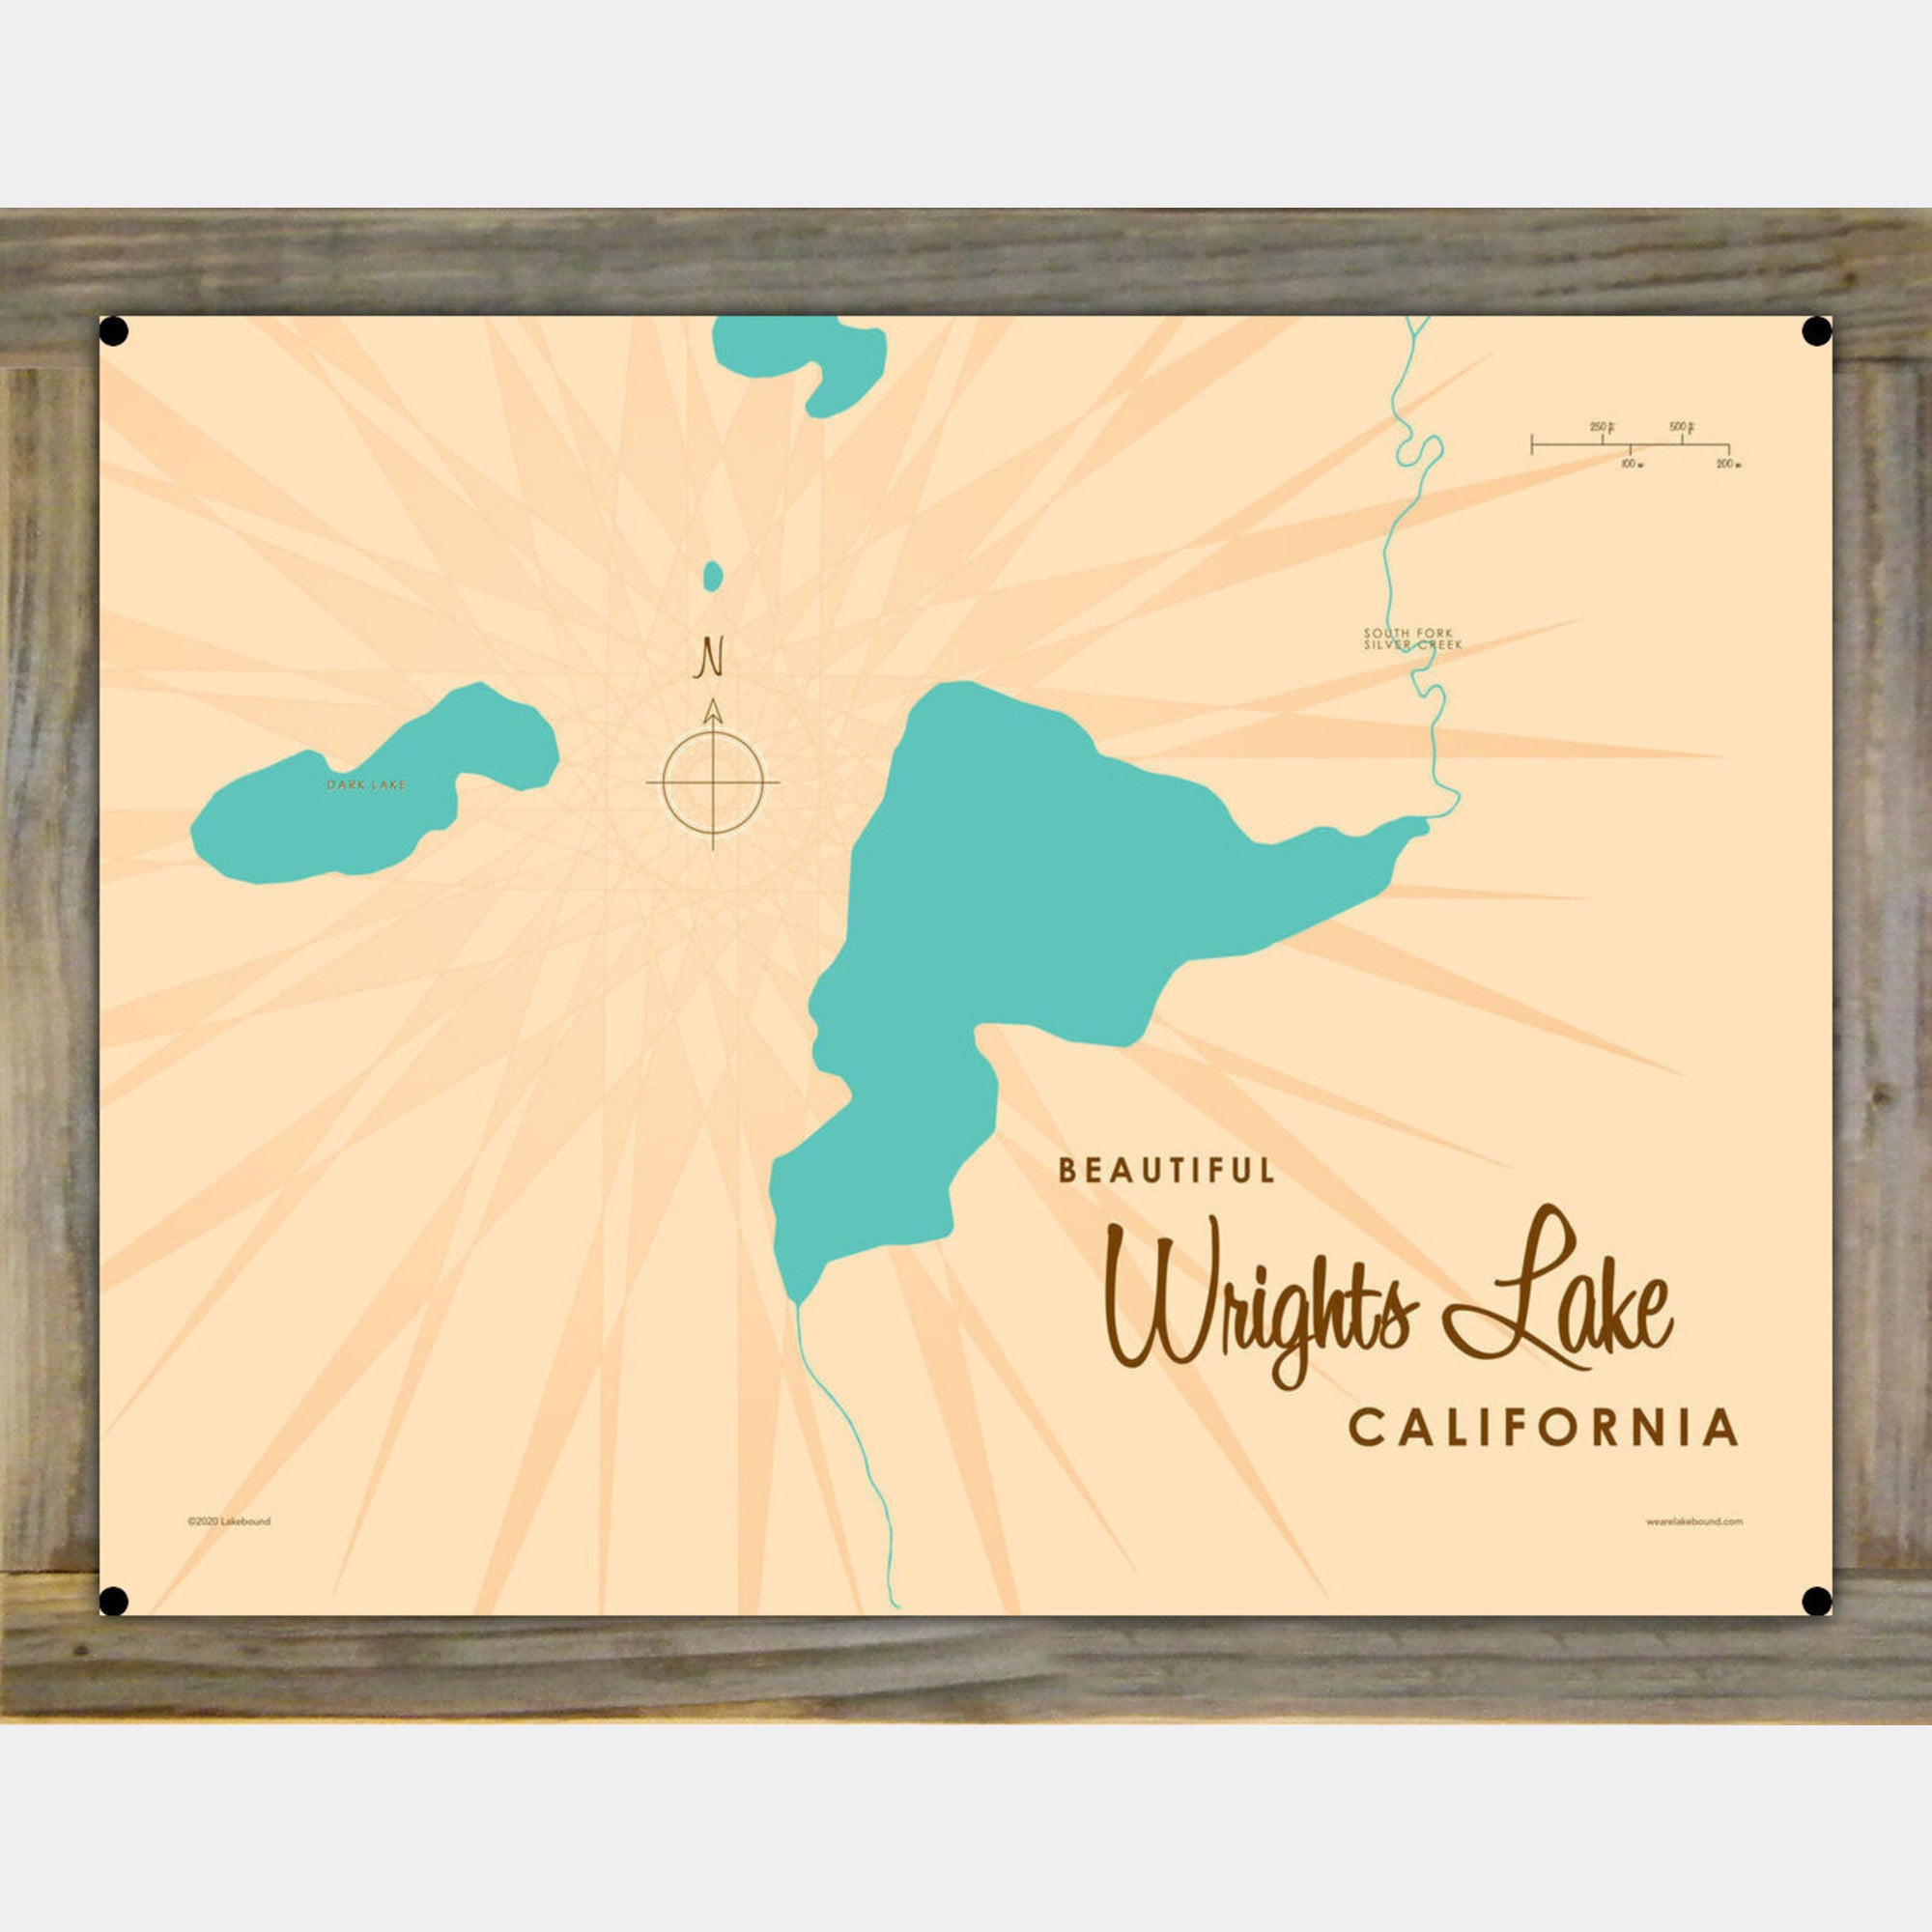 Wrights Lake California, Wood-Mounted Metal Sign Map Art